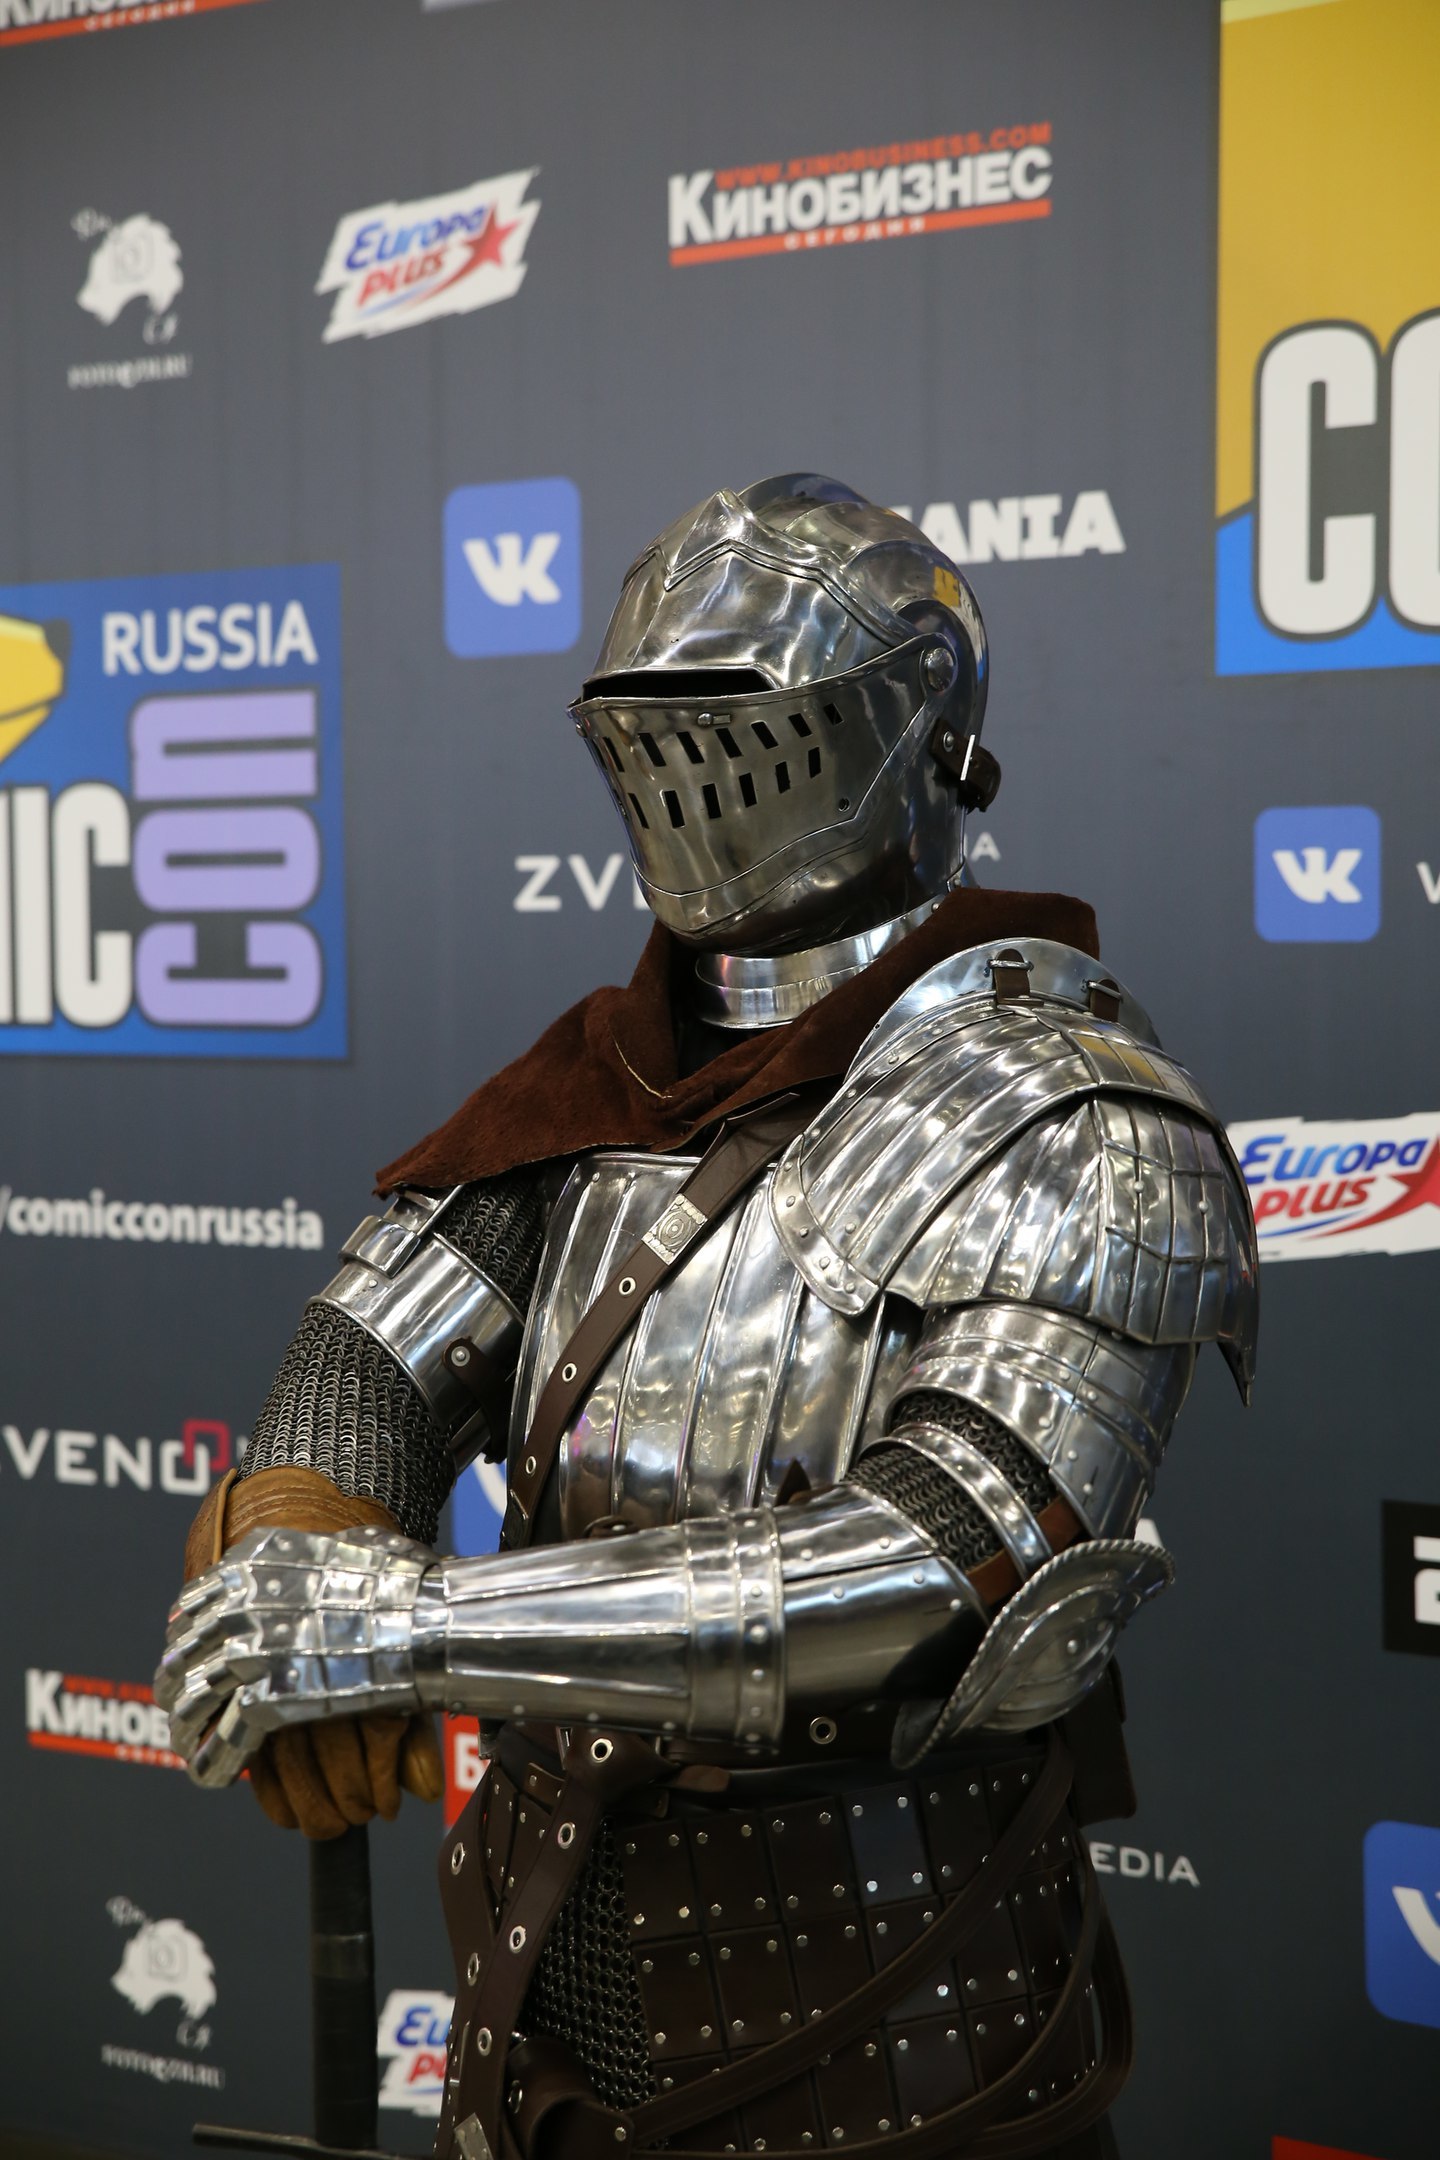 Knight armor from Dark Souls - Dark souls, Games, Cosplay, Knight, Armor, Longpost, Knights